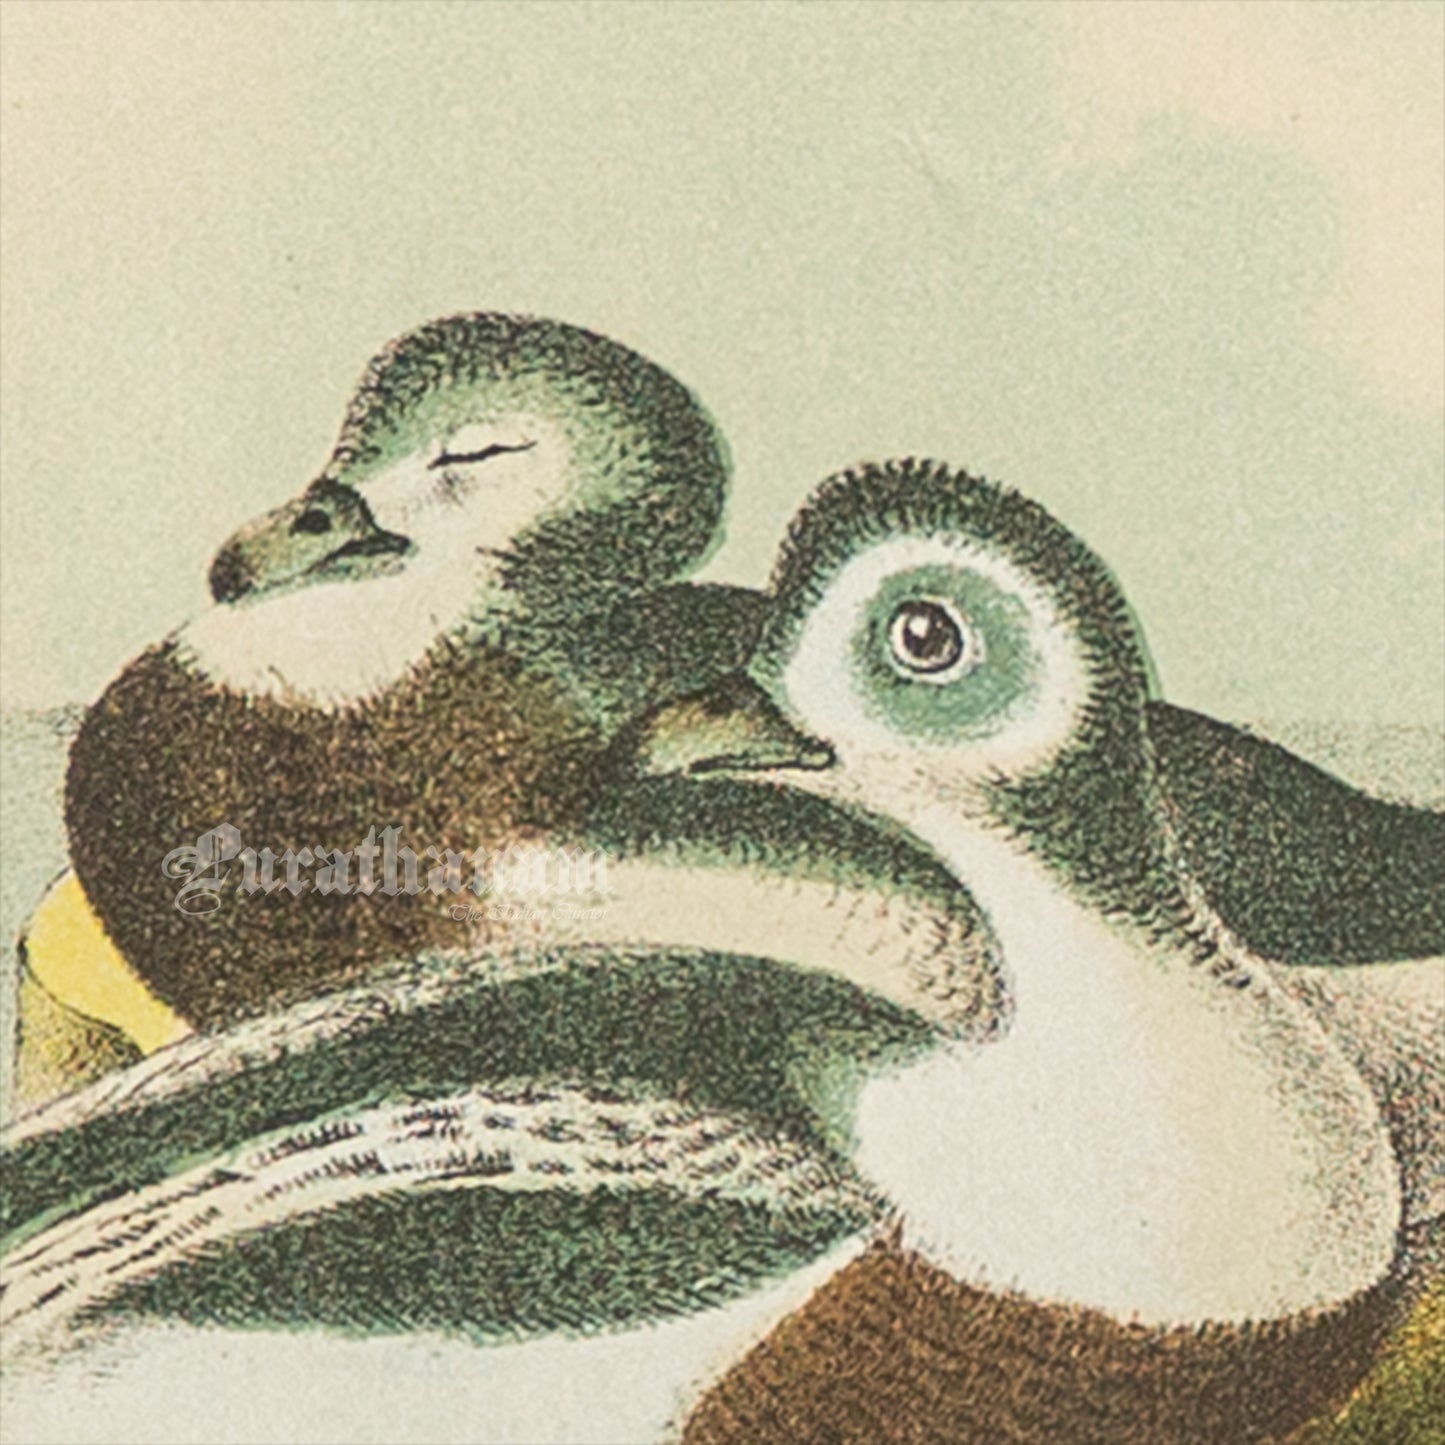 Bird - Chromo lithograph print (Plate - XXI) -  Bird Art / Avian Art